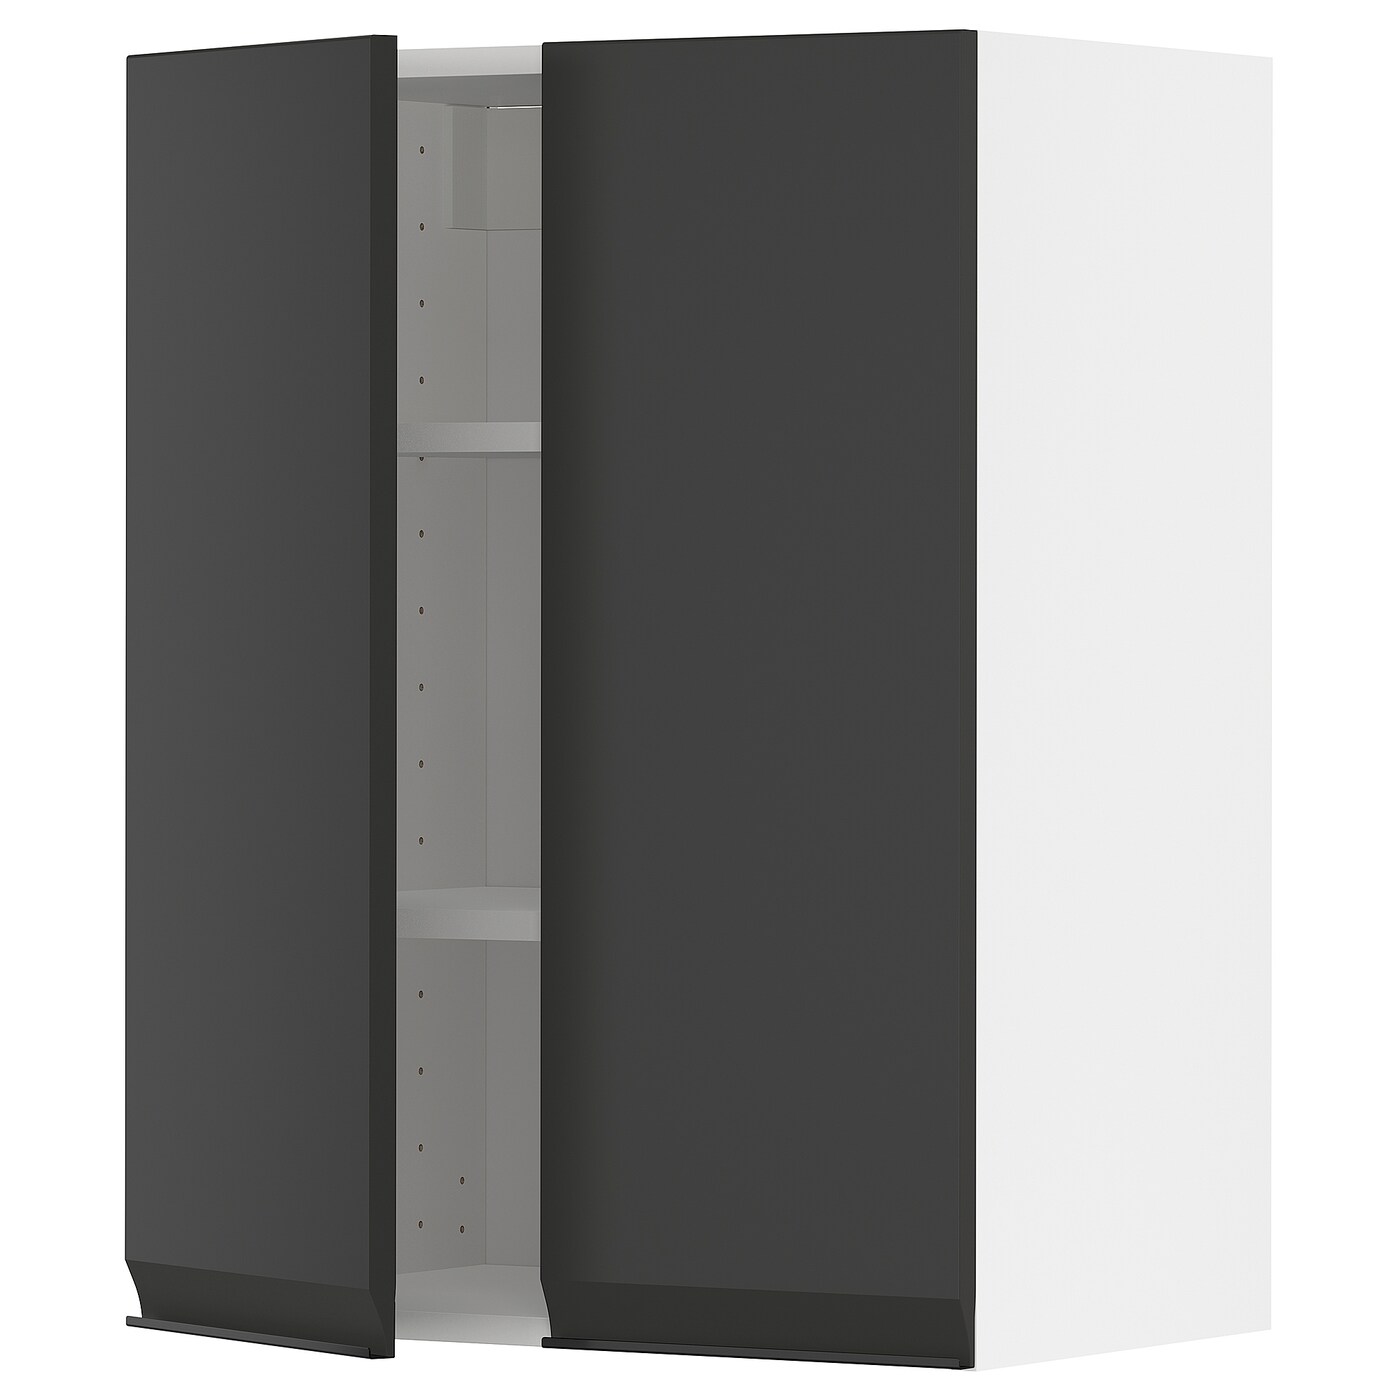 Навесной шкаф с полкой - METOD IKEA/ МЕТОД ИКЕА, 80х60 см, черный/белый